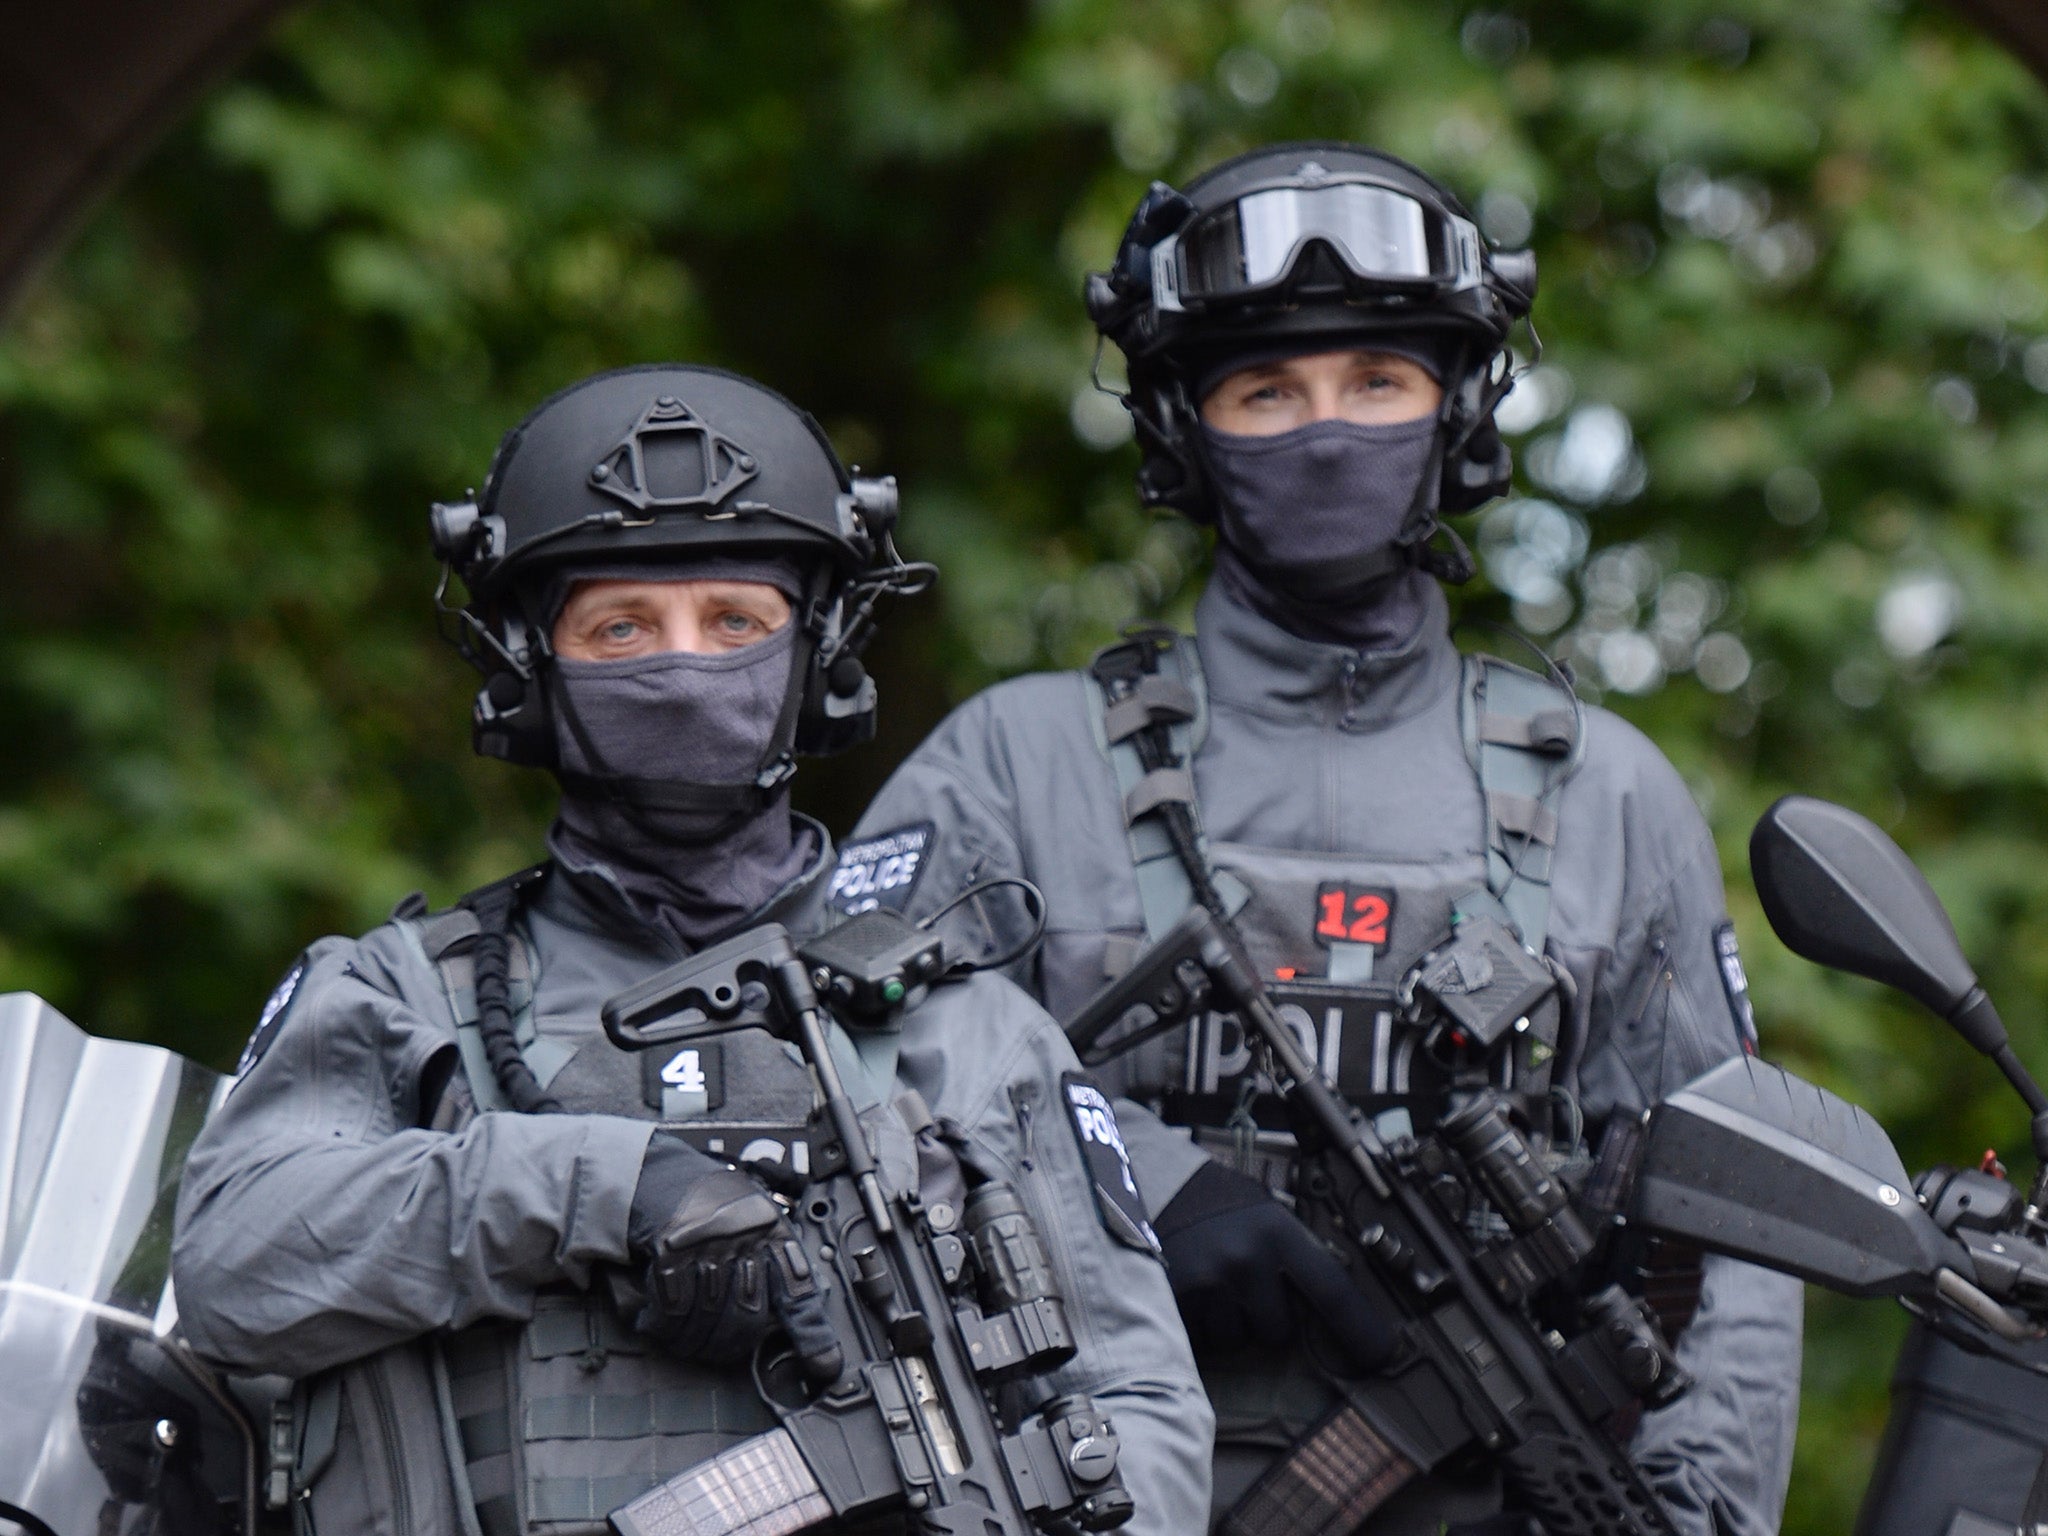 Armed police uk